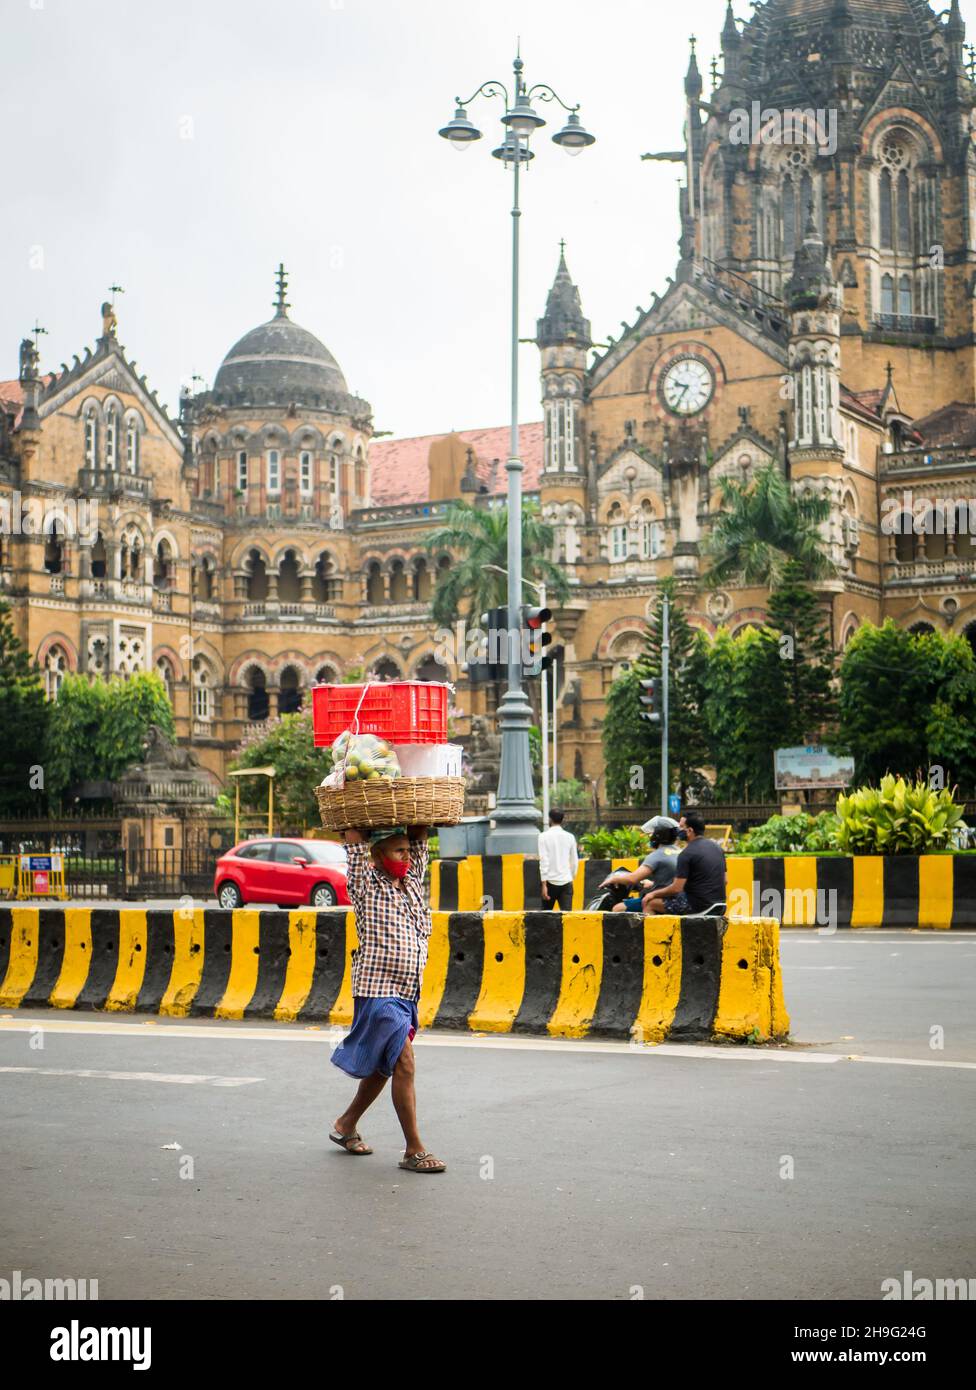 MUMBAI, INDIA - 2 de octubre de 2021 : Portero no identificado que usa una máscara covid-19 que transporta el carro de frutas en la estación CST, Mumbai Foto de stock